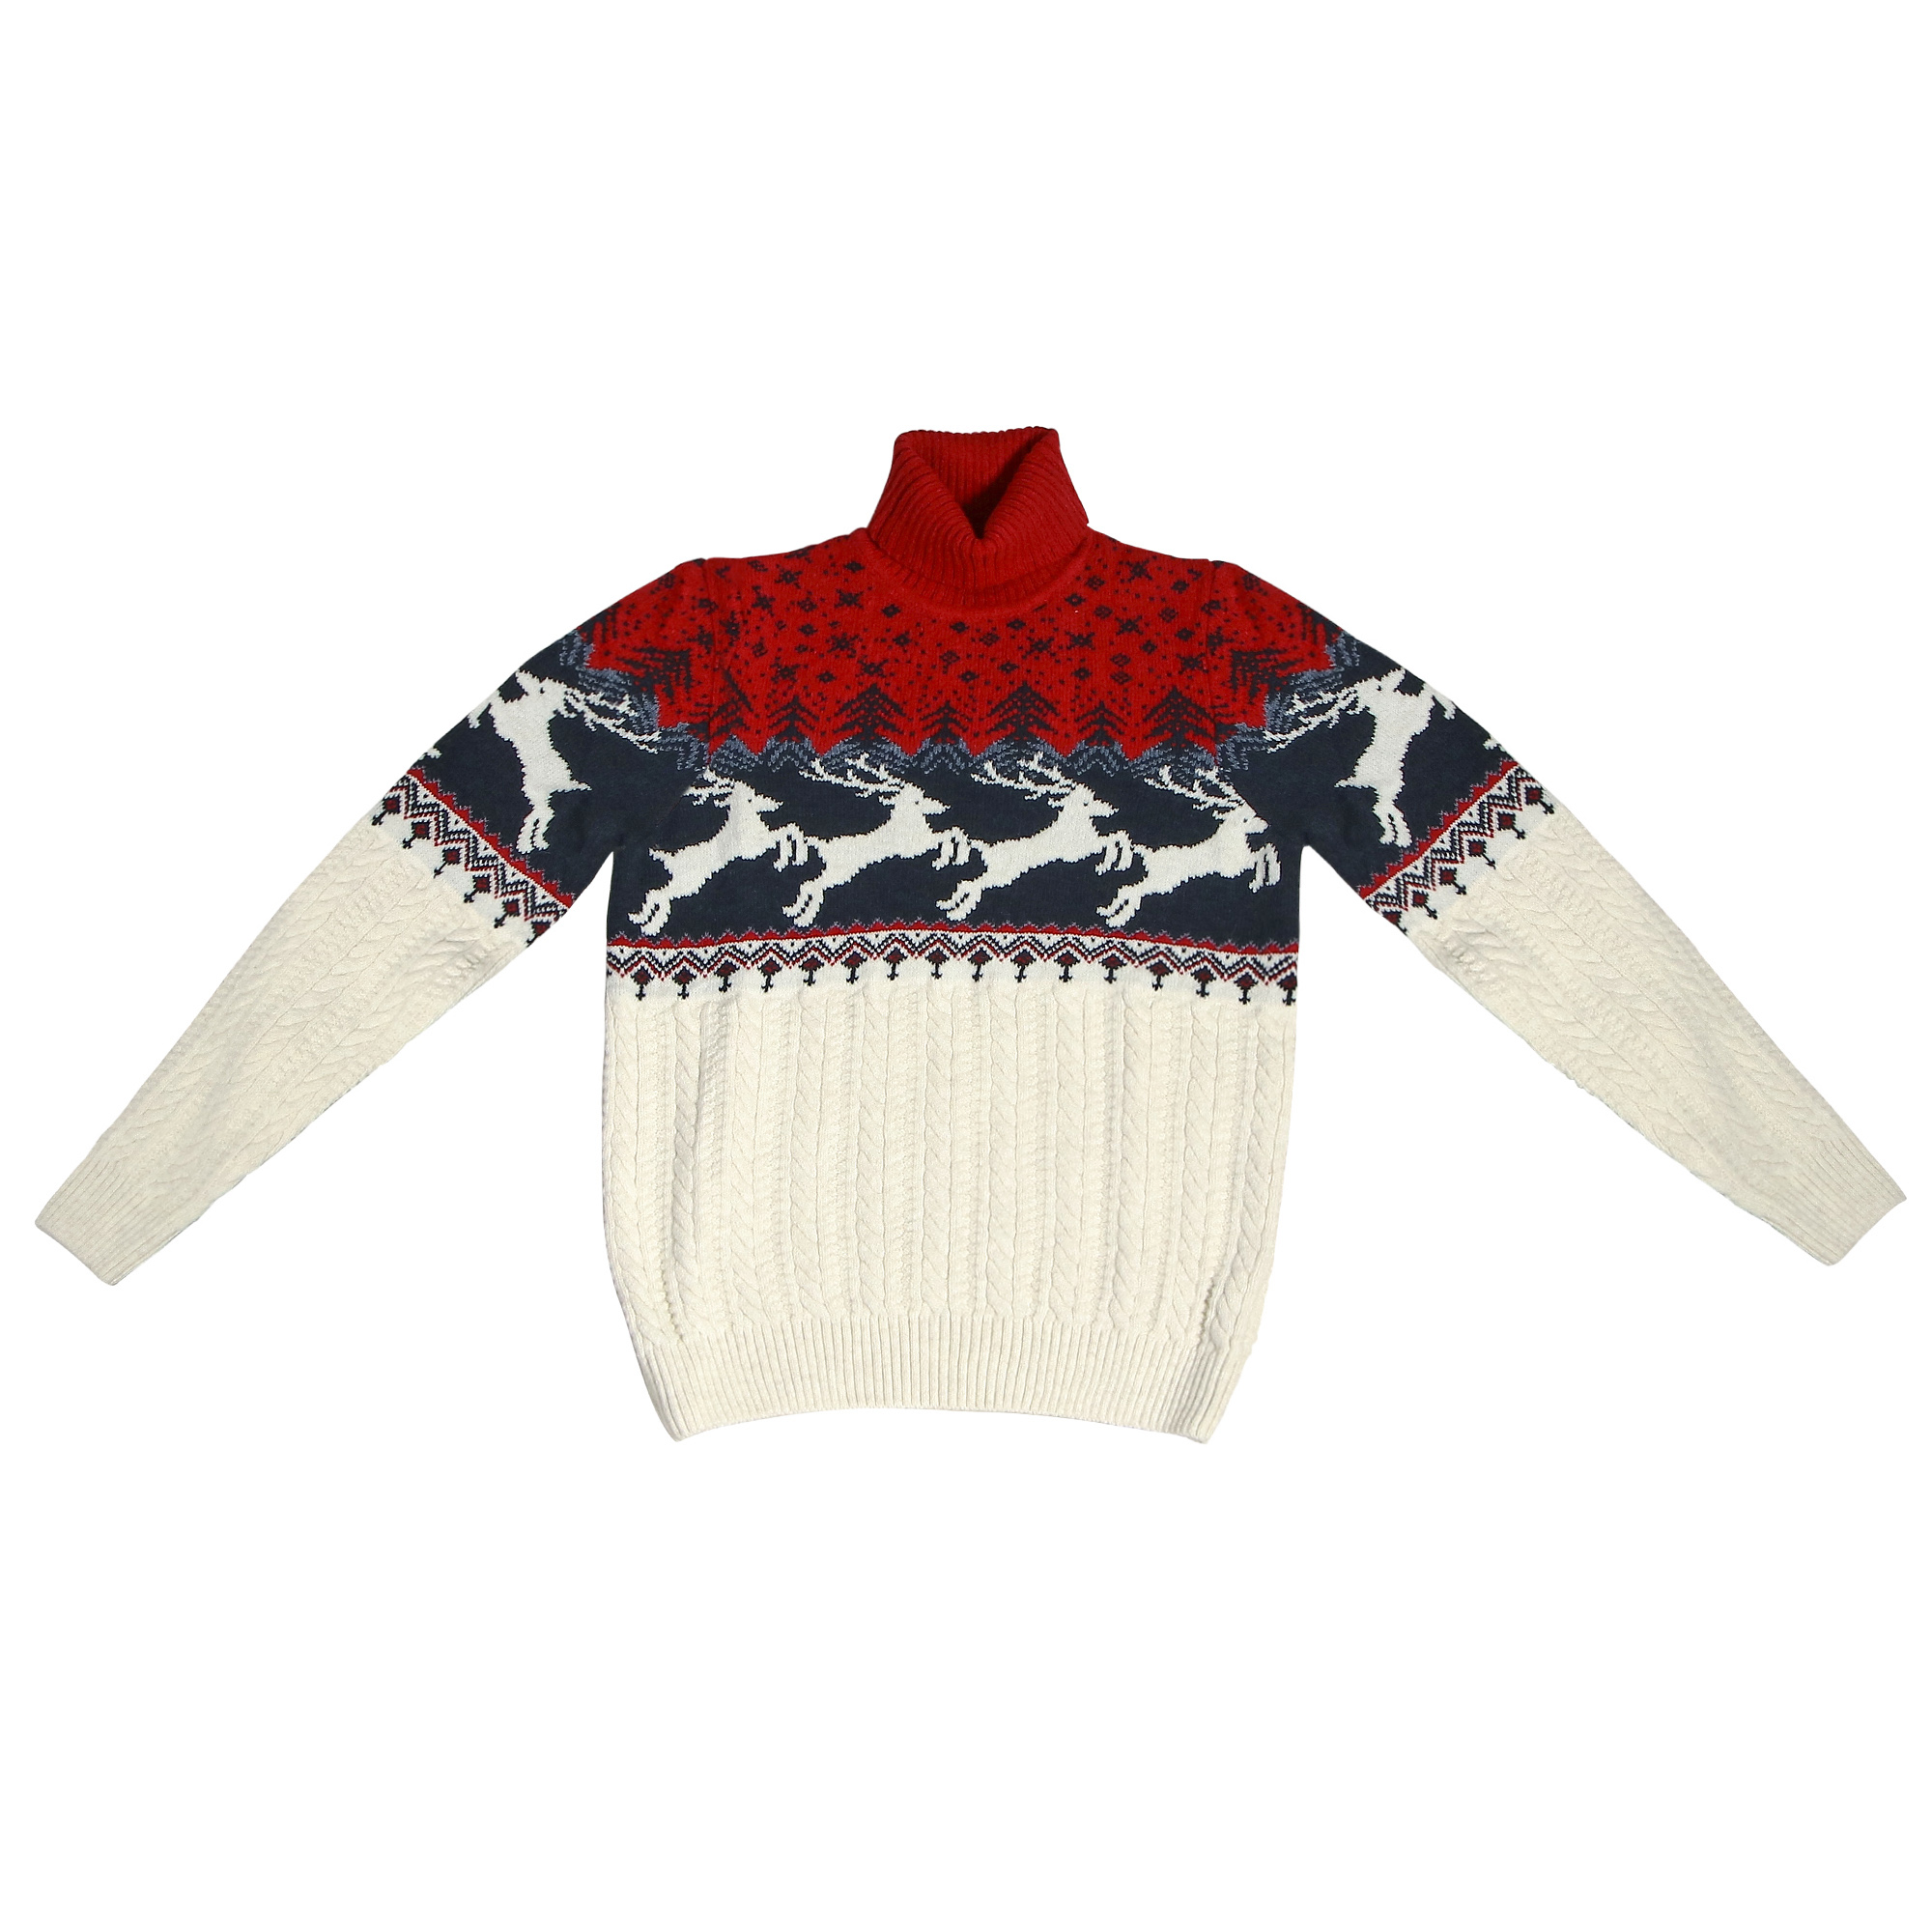 Женский свитер Pulltonic Олень белый, цвет красный, размер S - фото 1